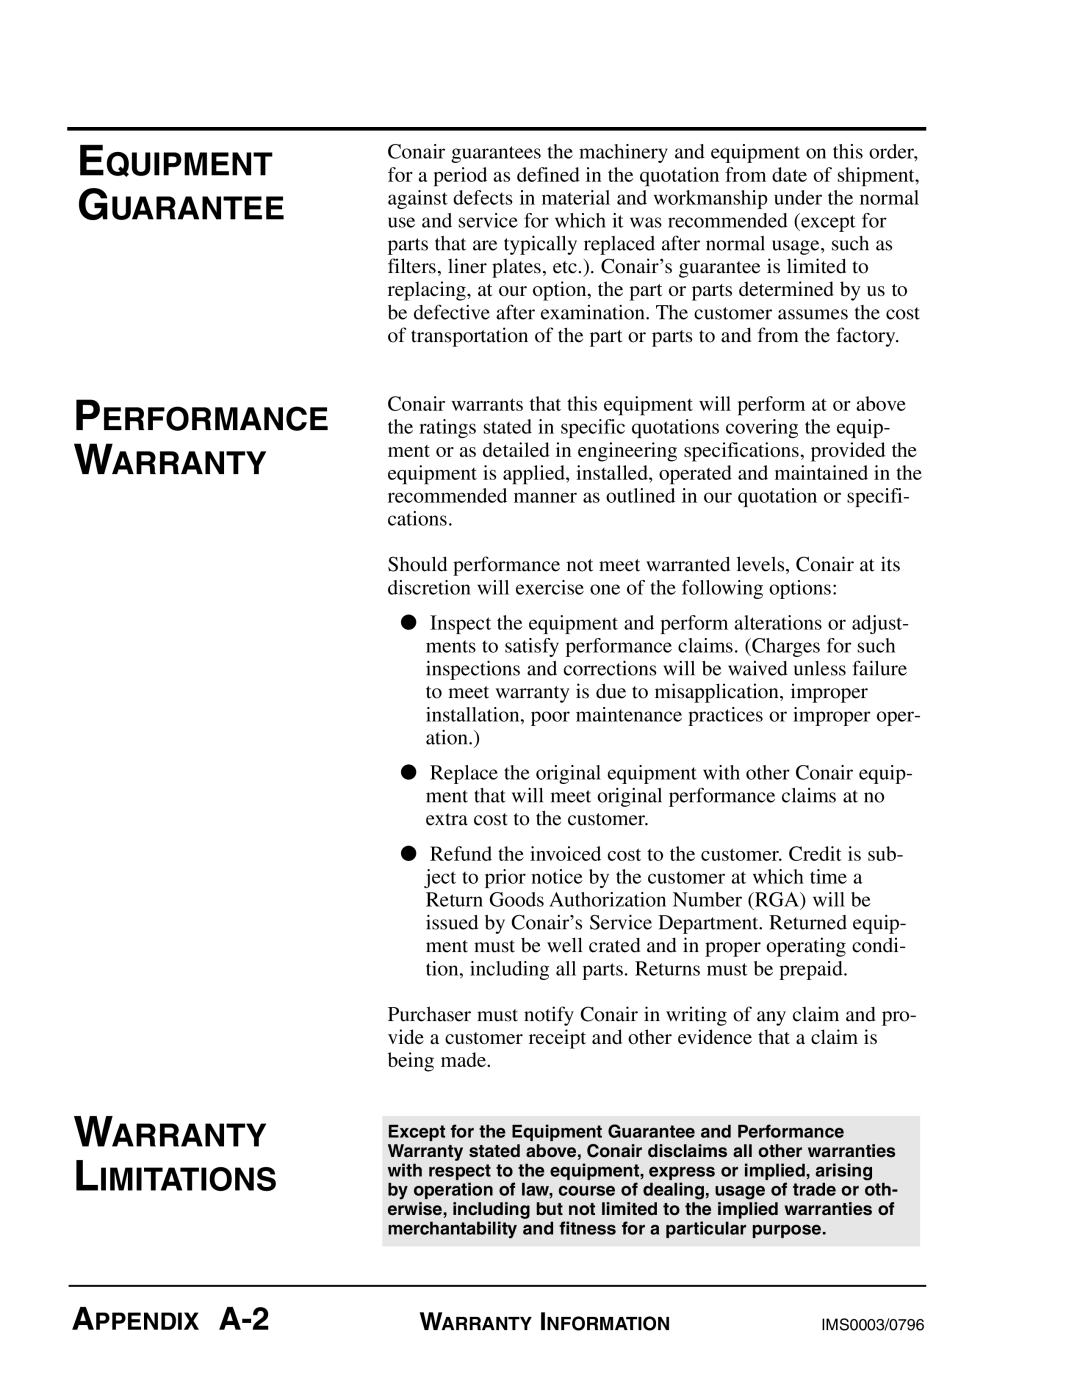 Conair VL Series manual Equipment Guarantee Performance Warranty, APPENDIX A-2, Warranty Limitations 